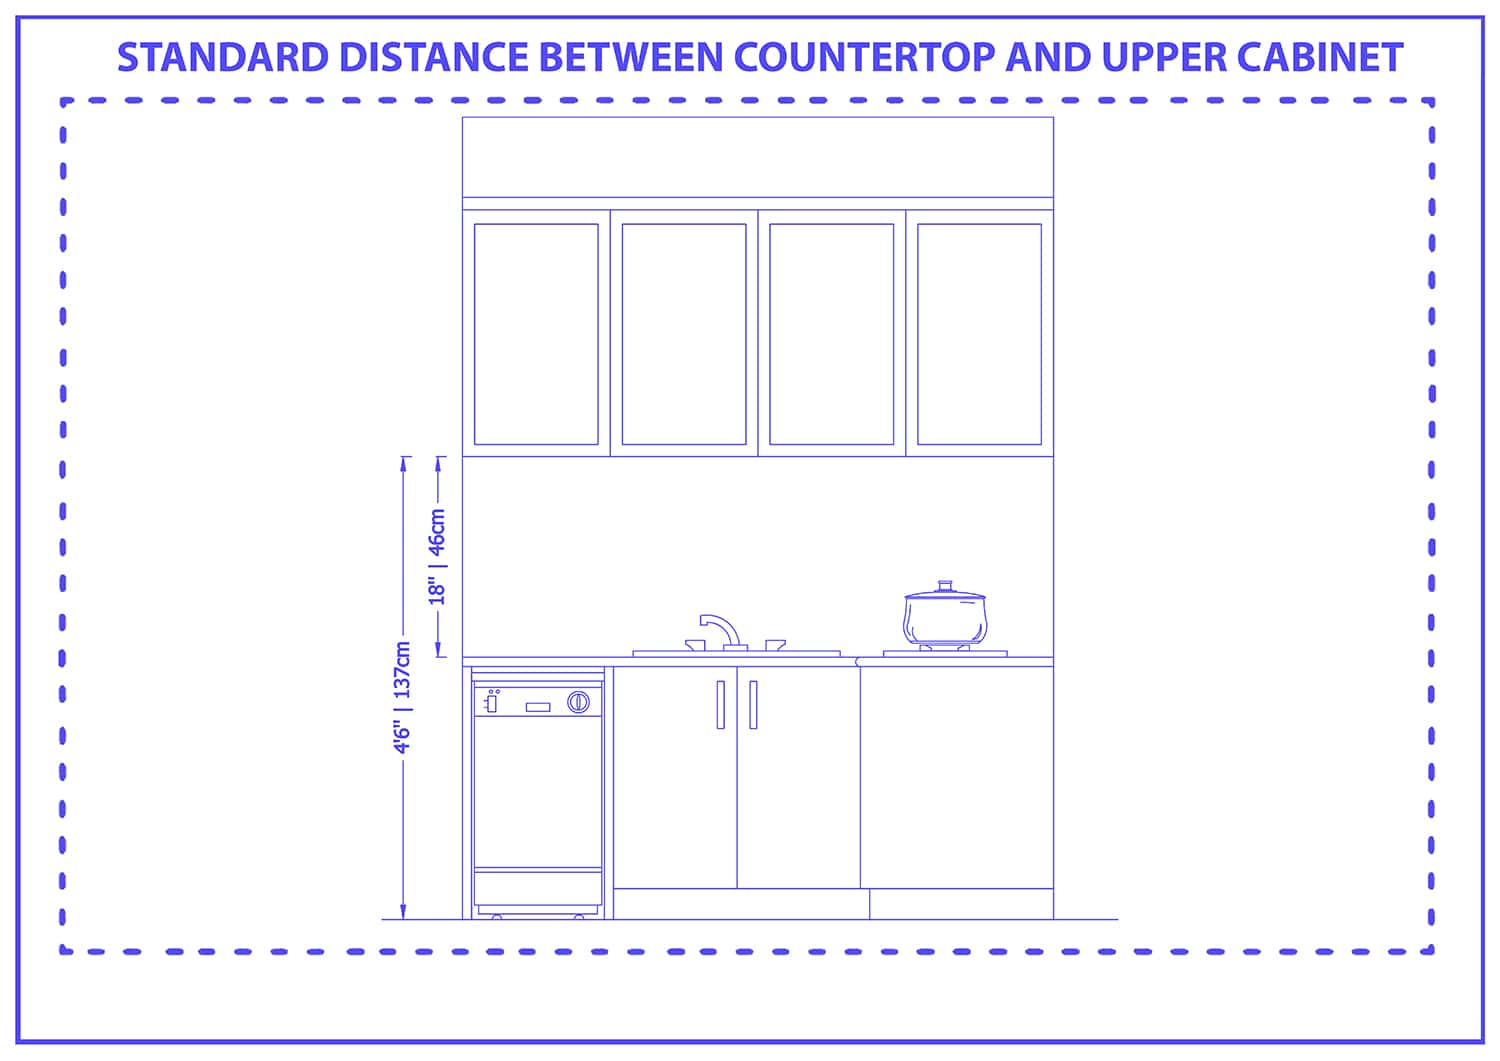 Standard distance between countertop and upper cabinet